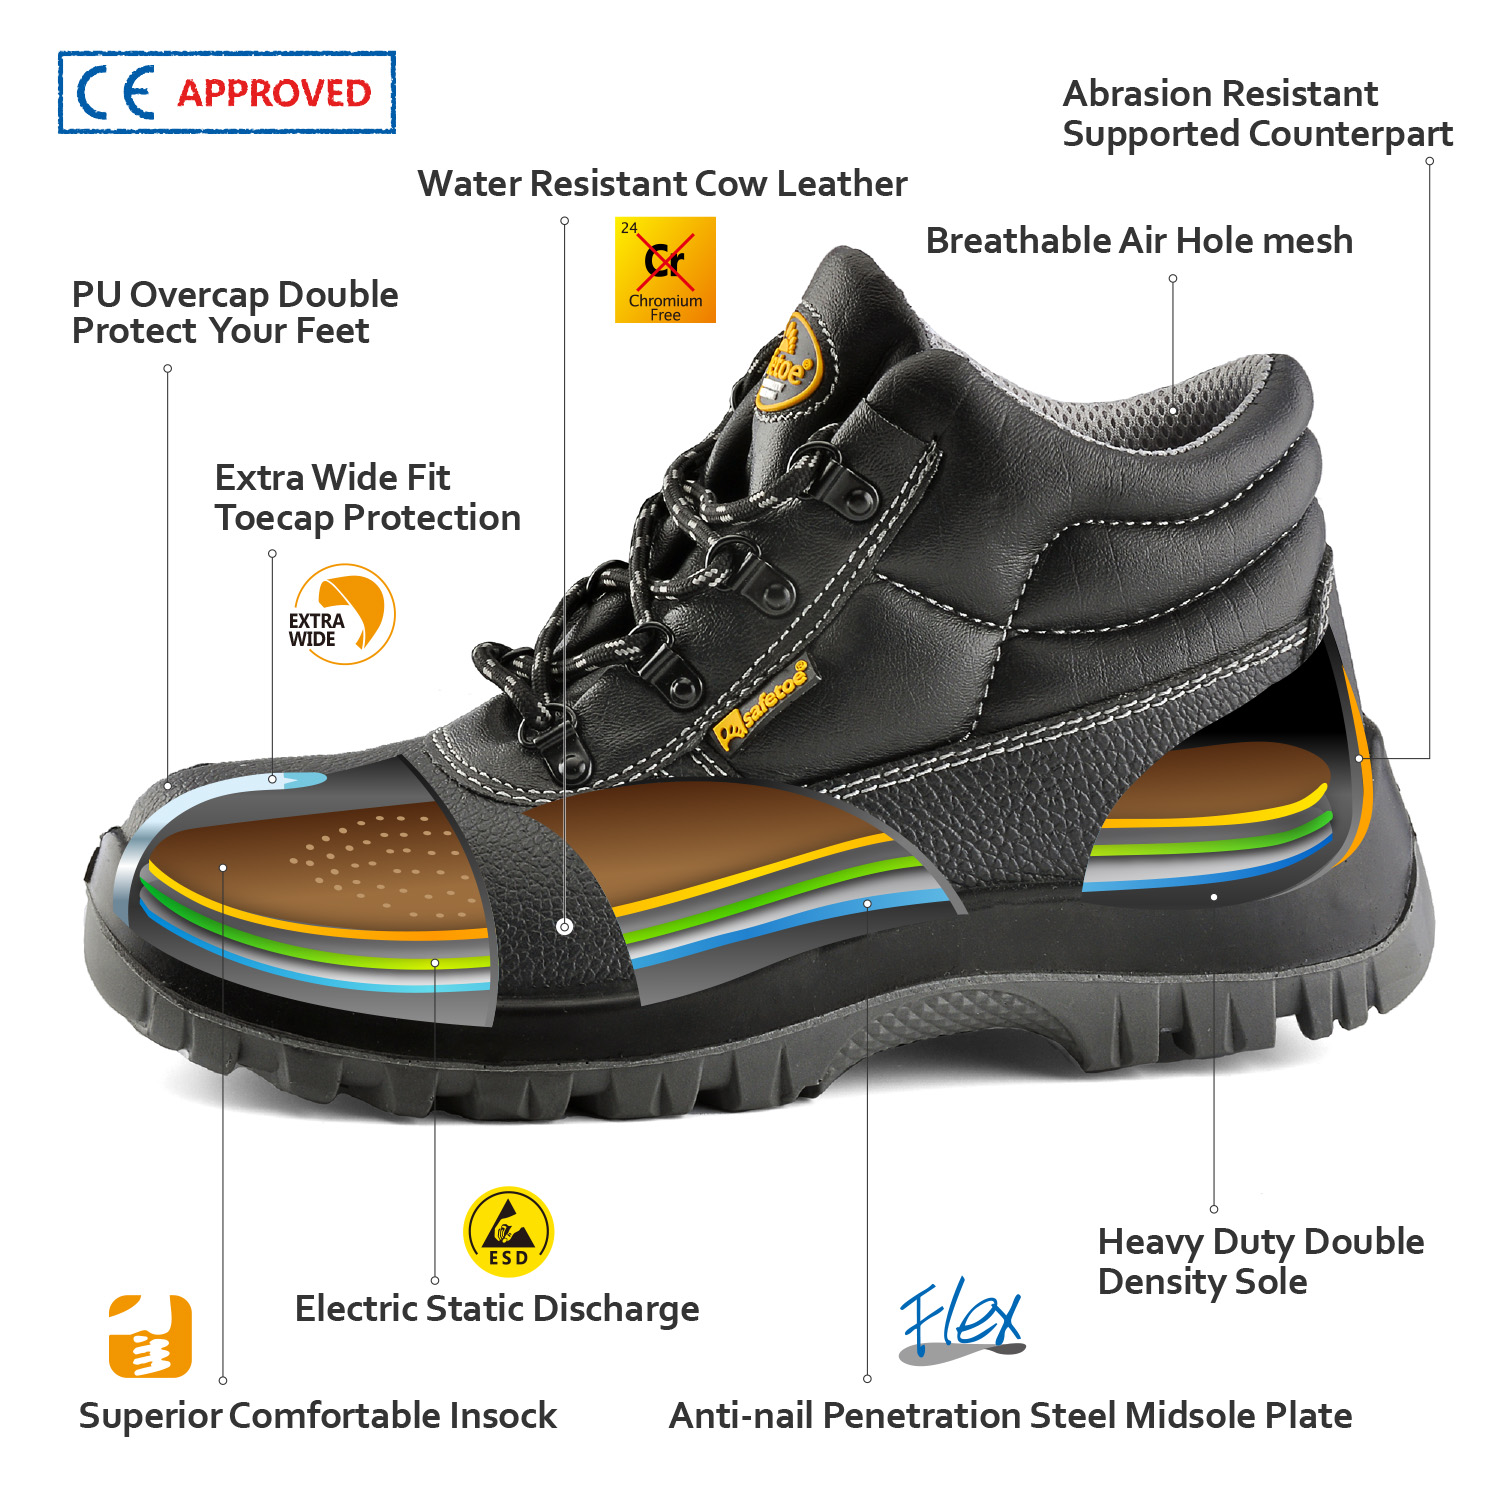 Zapatos de seguridad CE más vendidos M-8010